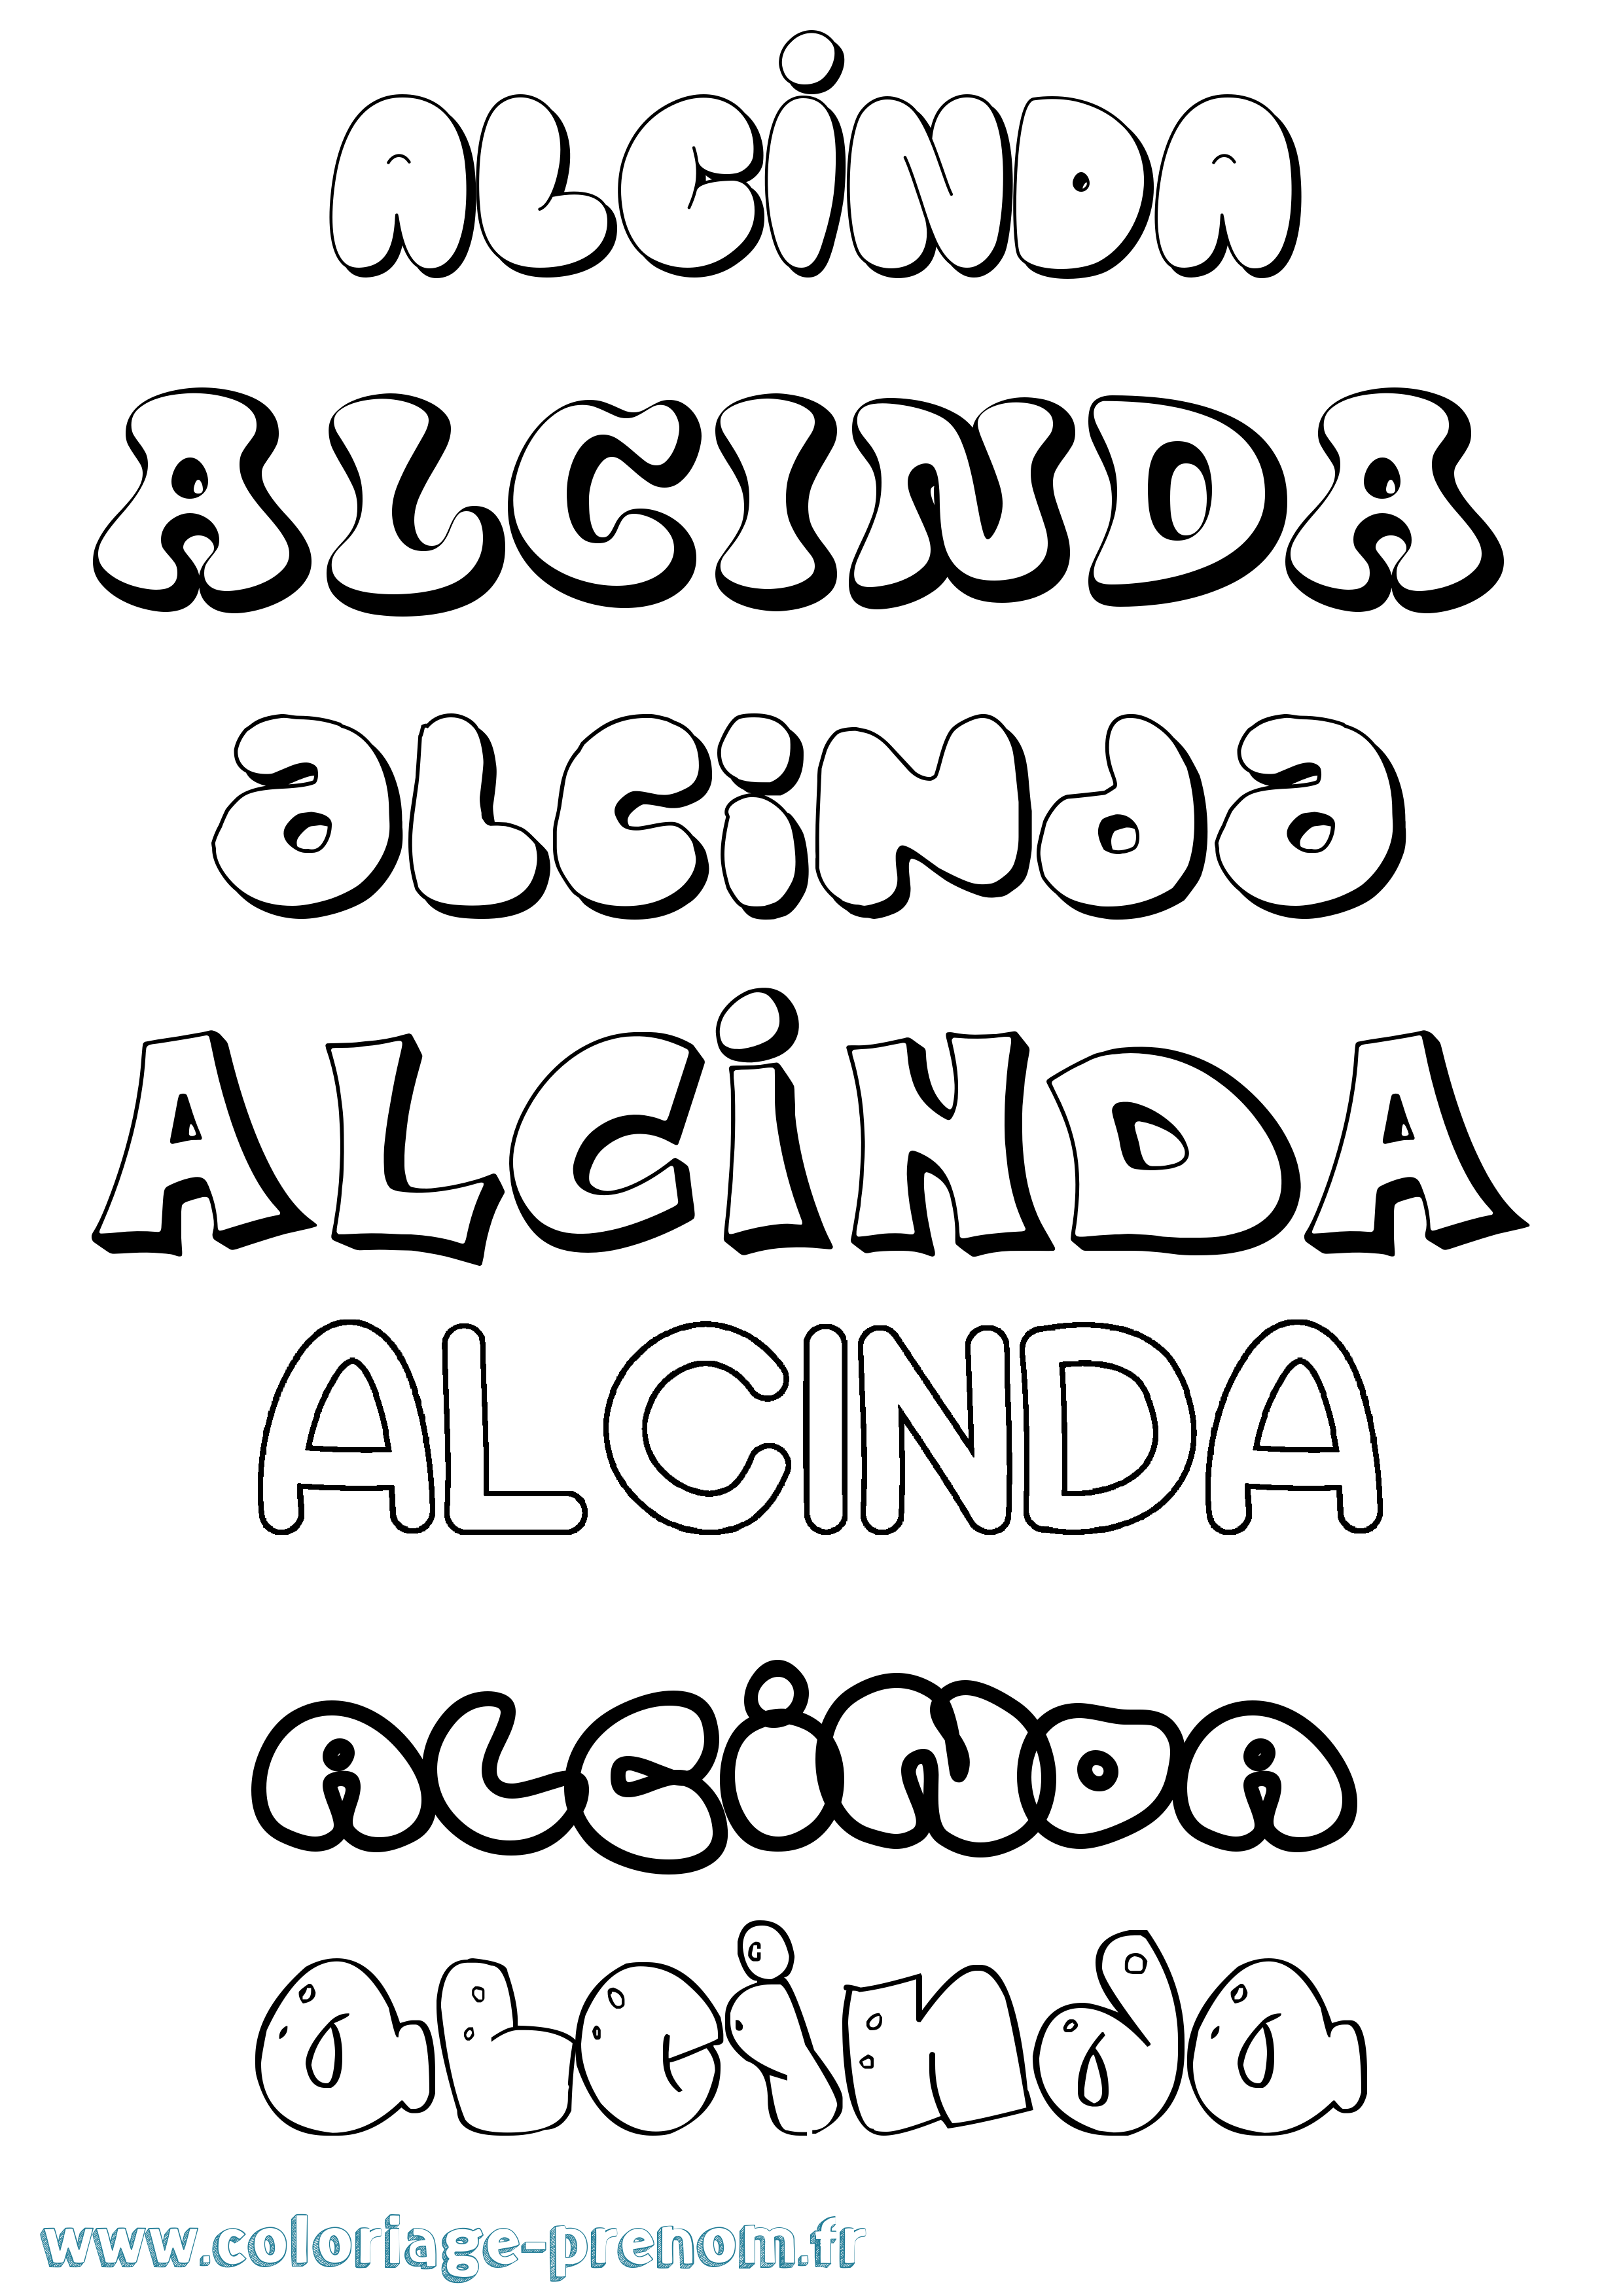 Coloriage prénom Alcinda Bubble